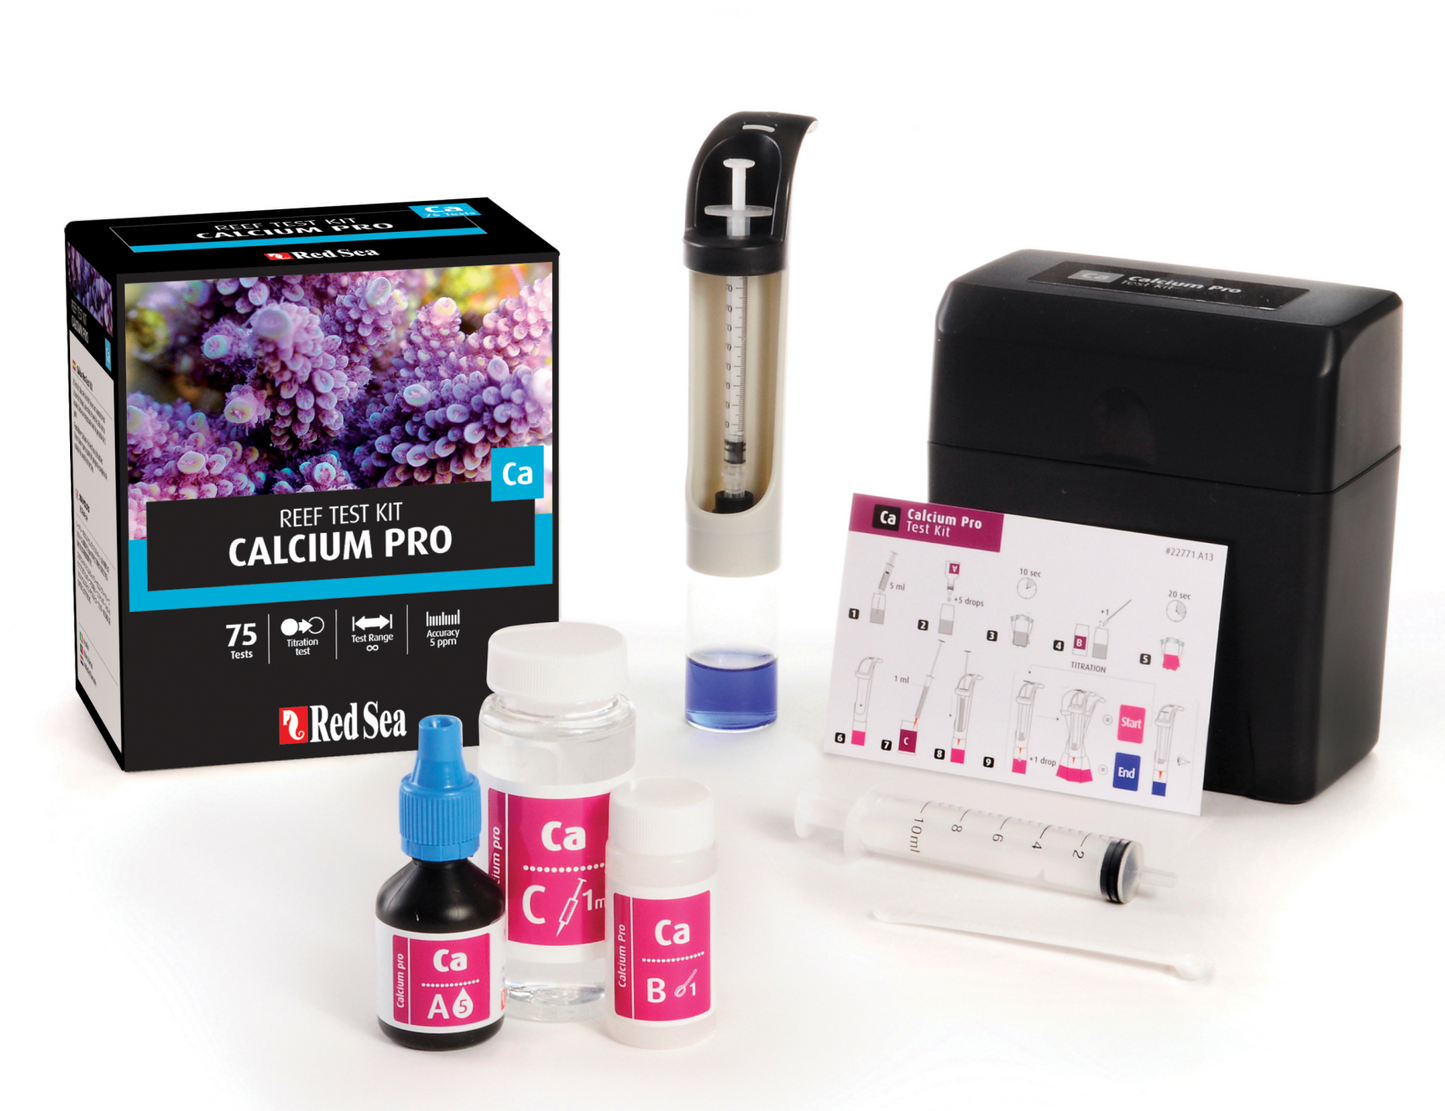 Calcium Pro Reef Test Kit